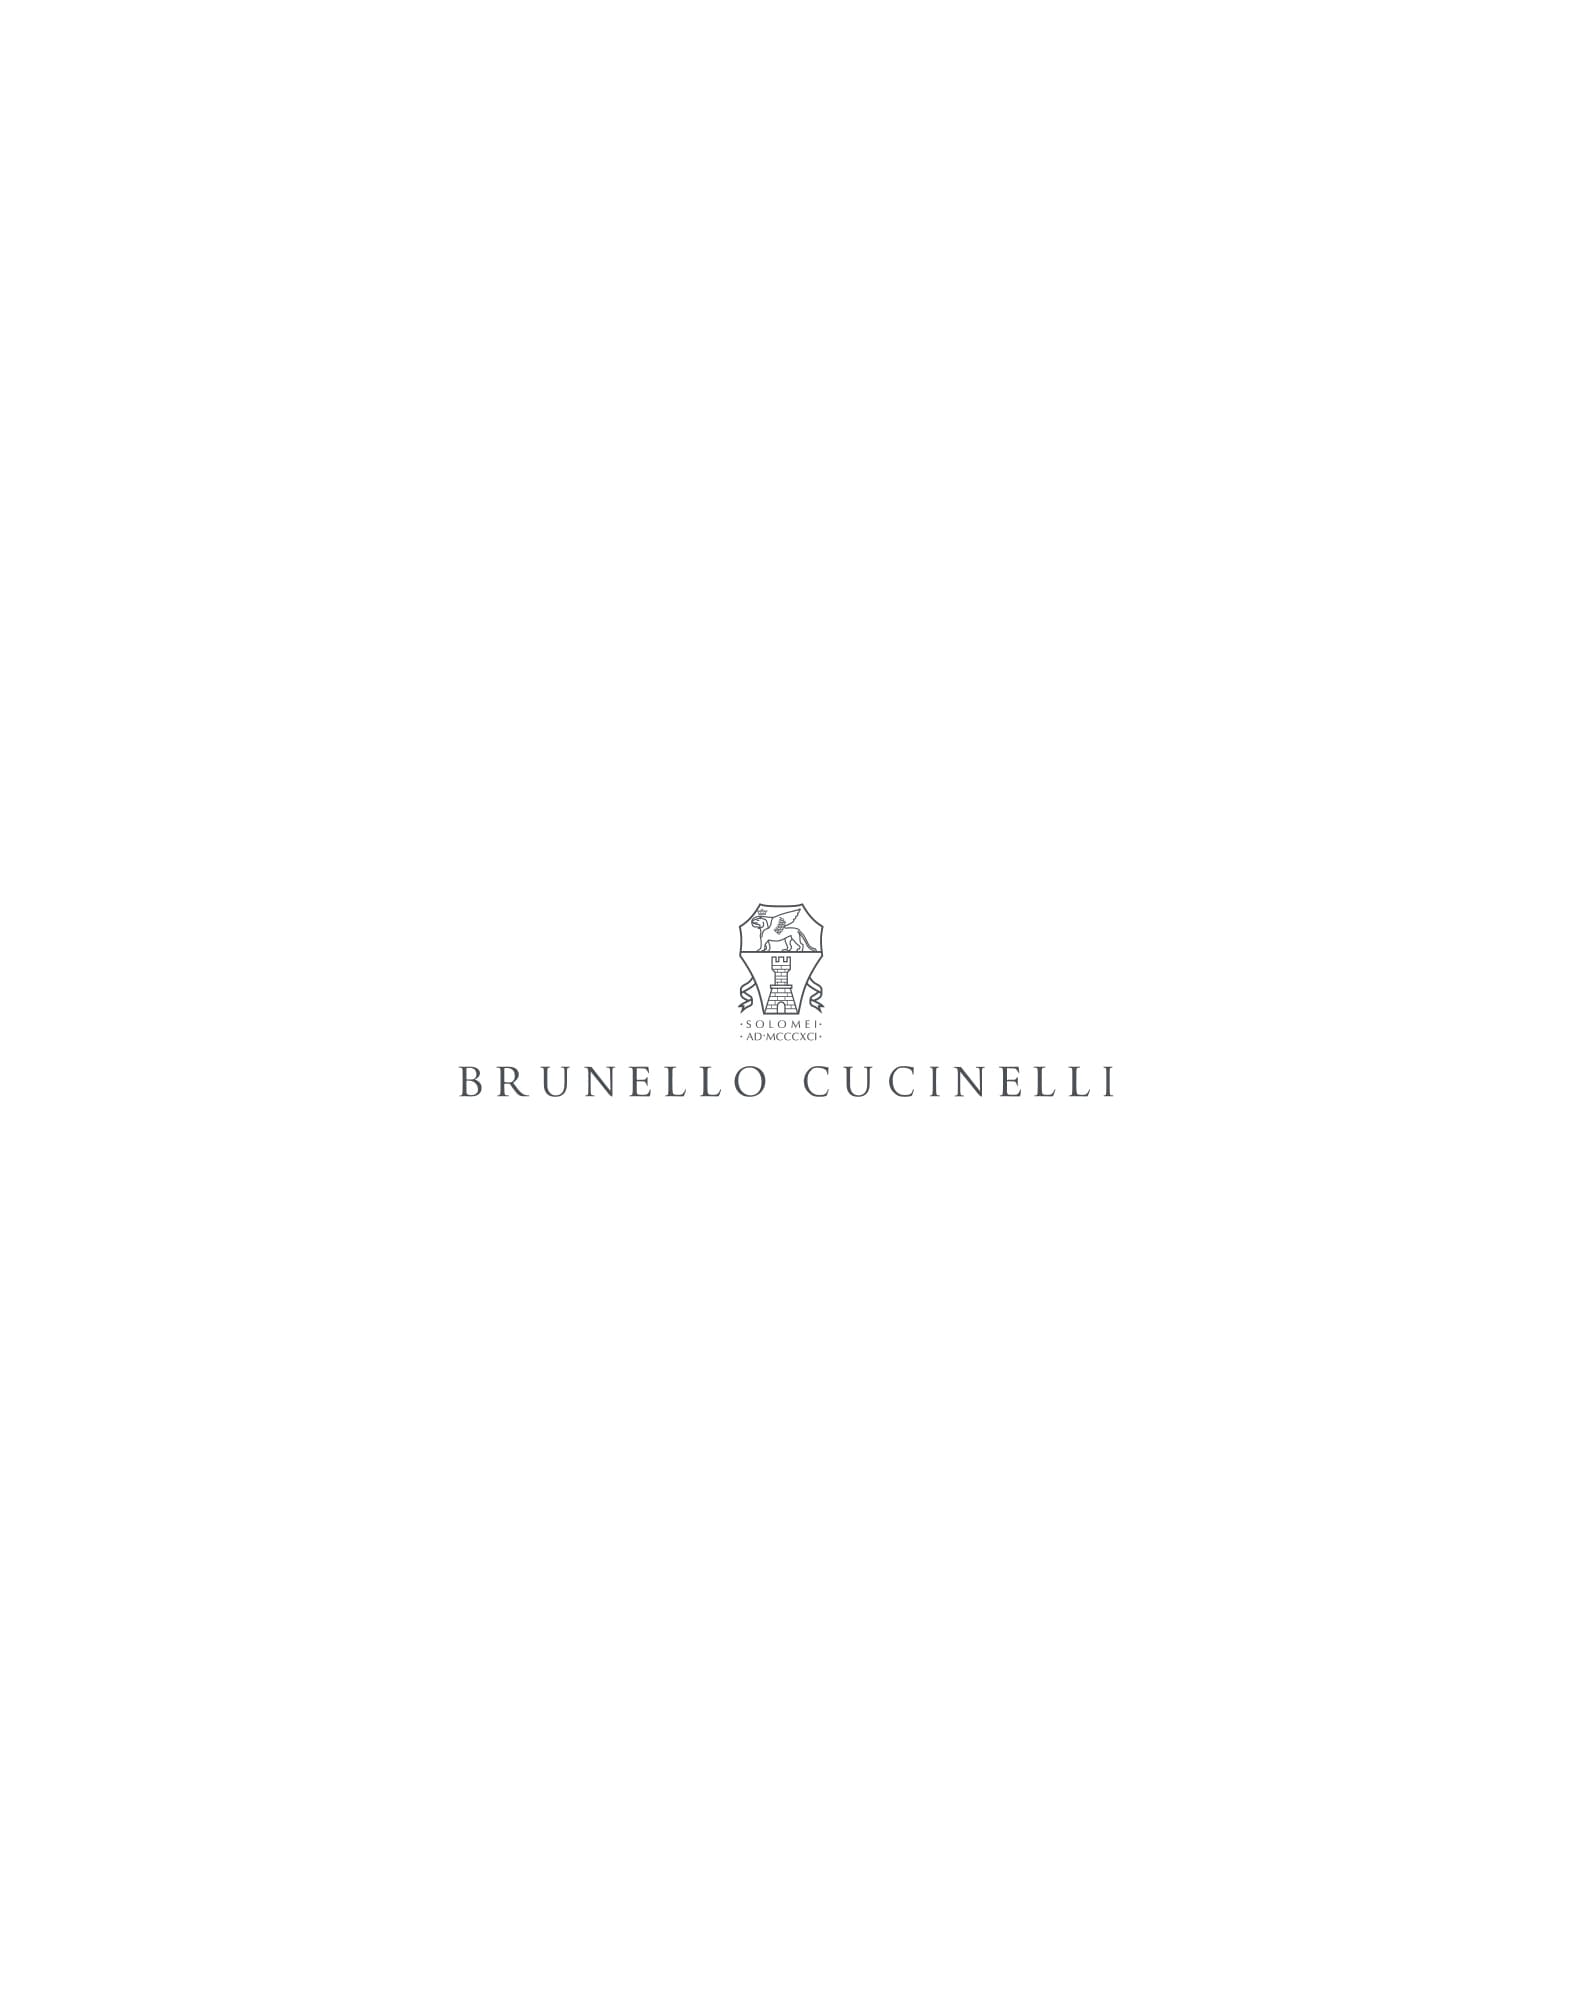 Смокинг с остроконечными лацканами Чёрный Мужчина - Brunello Cucinelli